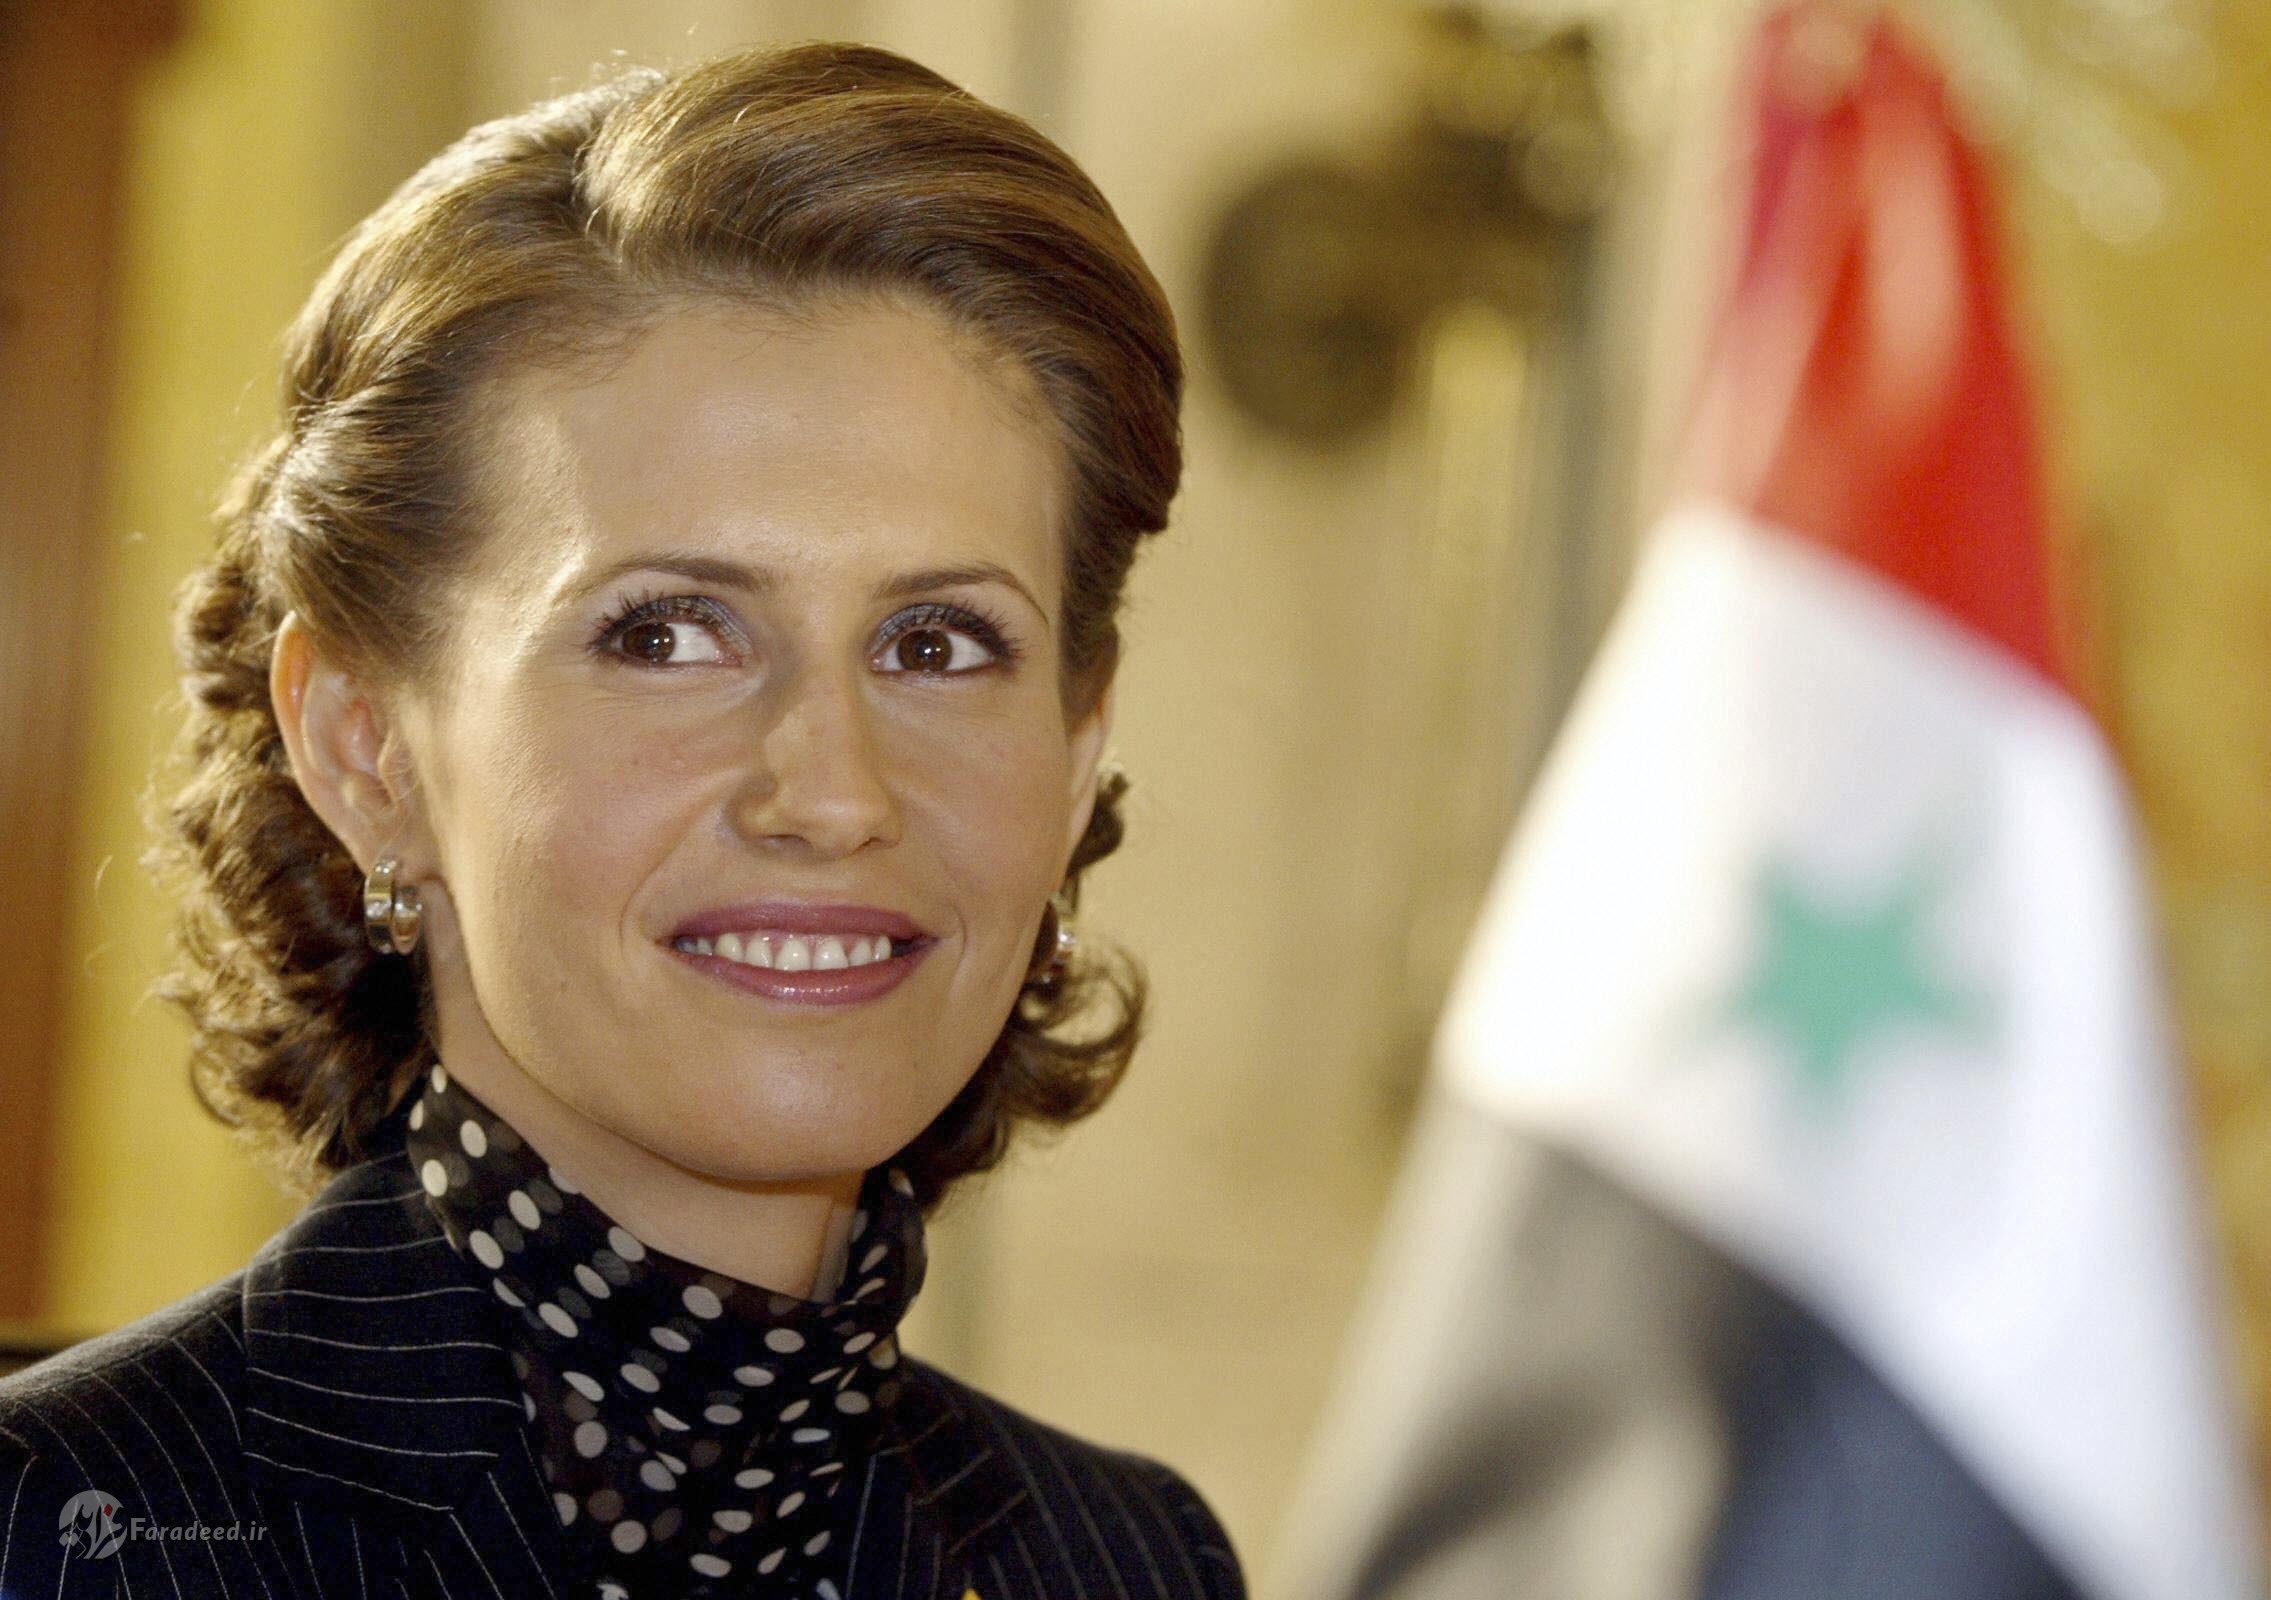 اسما همسر بشار اسد کیست؟ / همه چیز درباره همسر بریتانیایی تبار بشار اسد